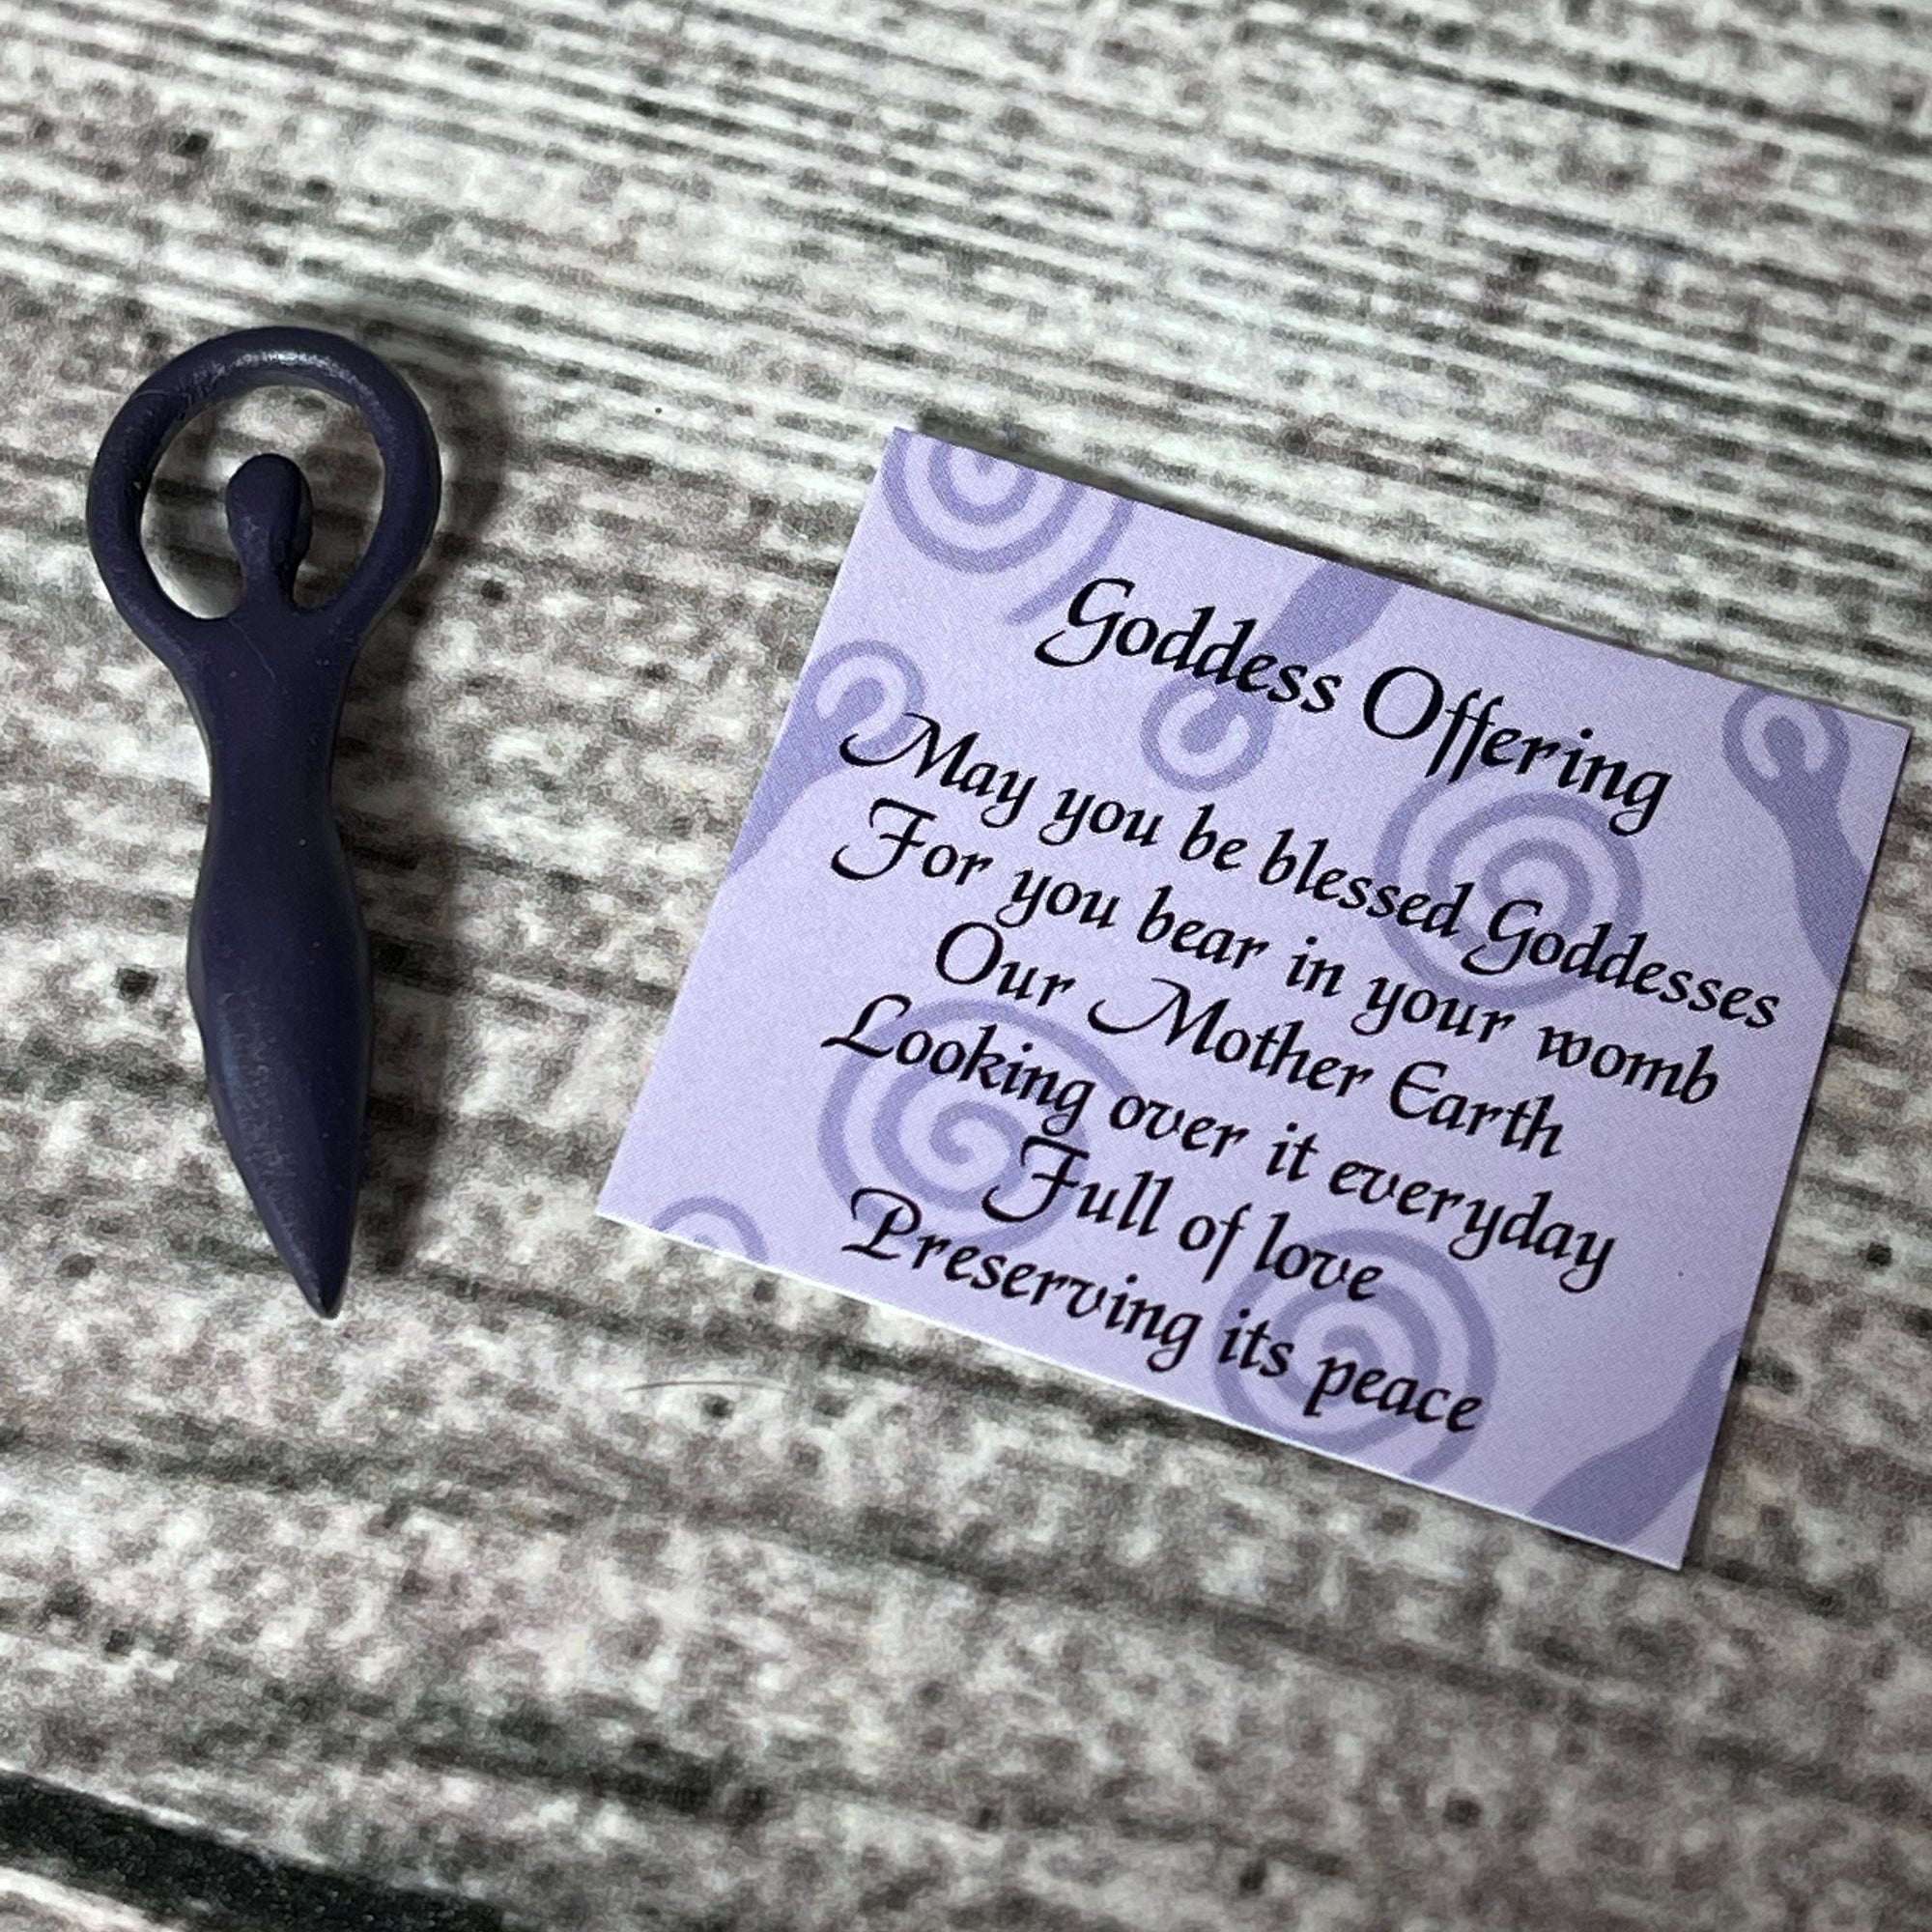 Goddess Offering - Miniature